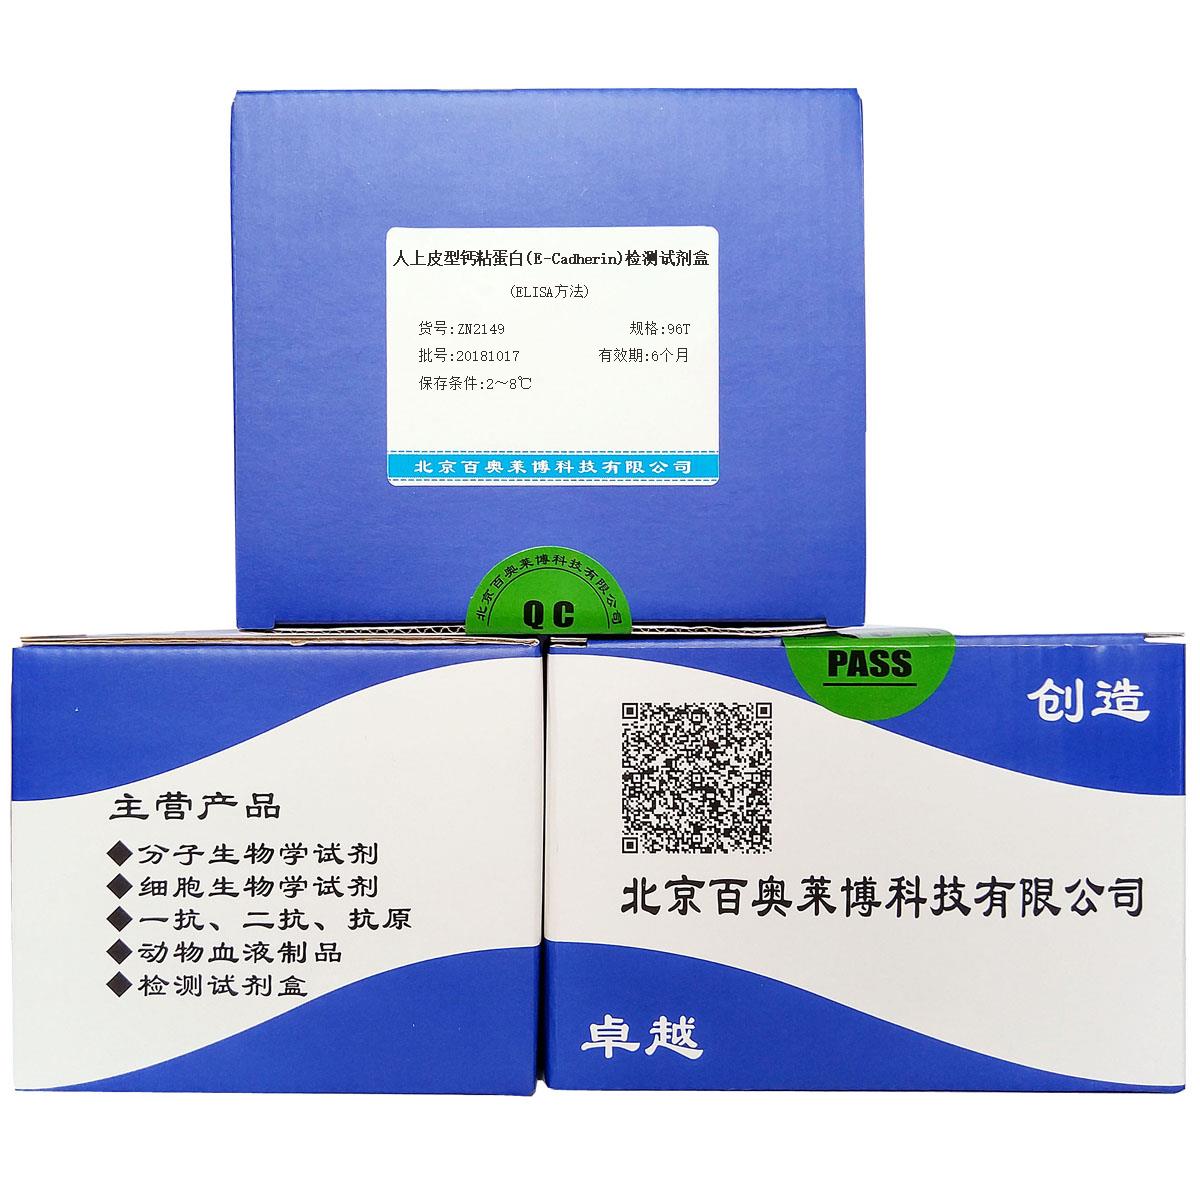 人上皮型钙粘蛋白(E-Cadherin)检测试剂盒(ELISA方法)